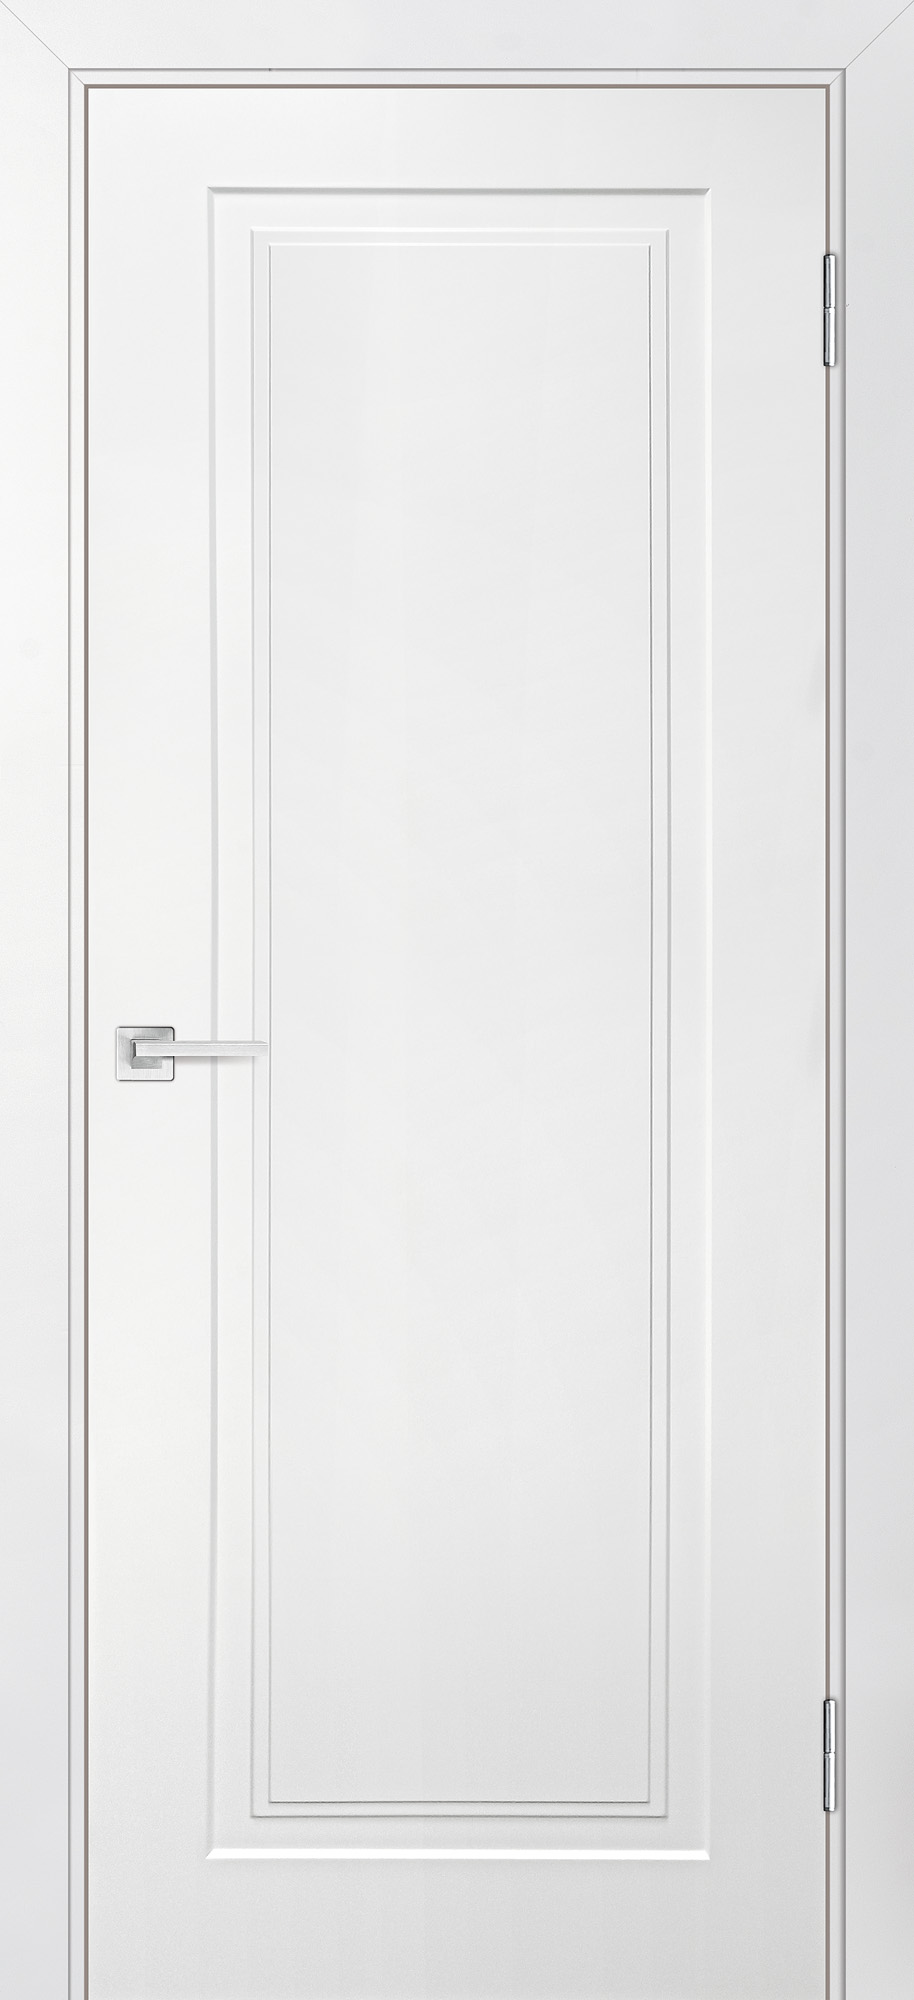 Двери крашеные (Эмаль) ТЕКОНА Смальта-Лайн 06 глухое Белый ral 9003 размер 200 х 60 см. артикул F0000093278